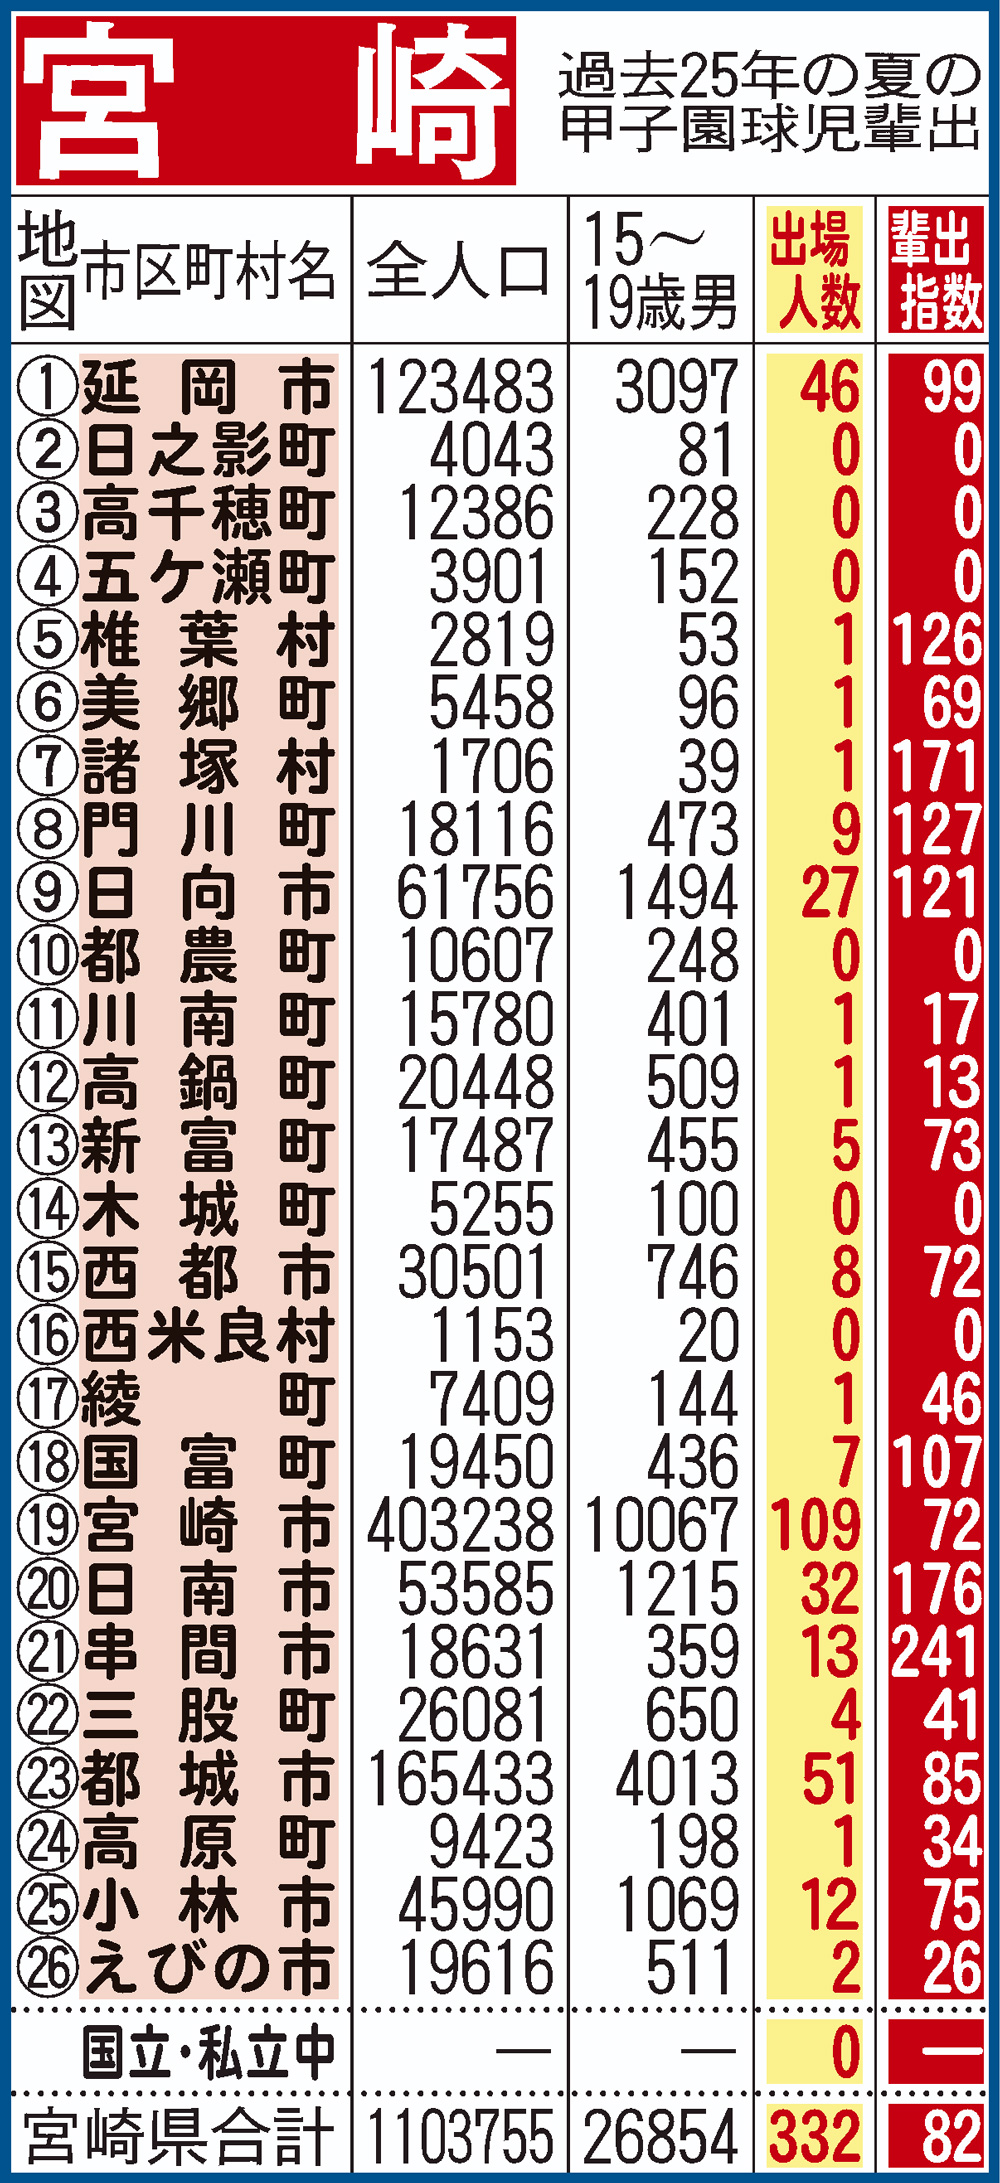 過去25年間における宮崎県地域別の甲子園輩出指数